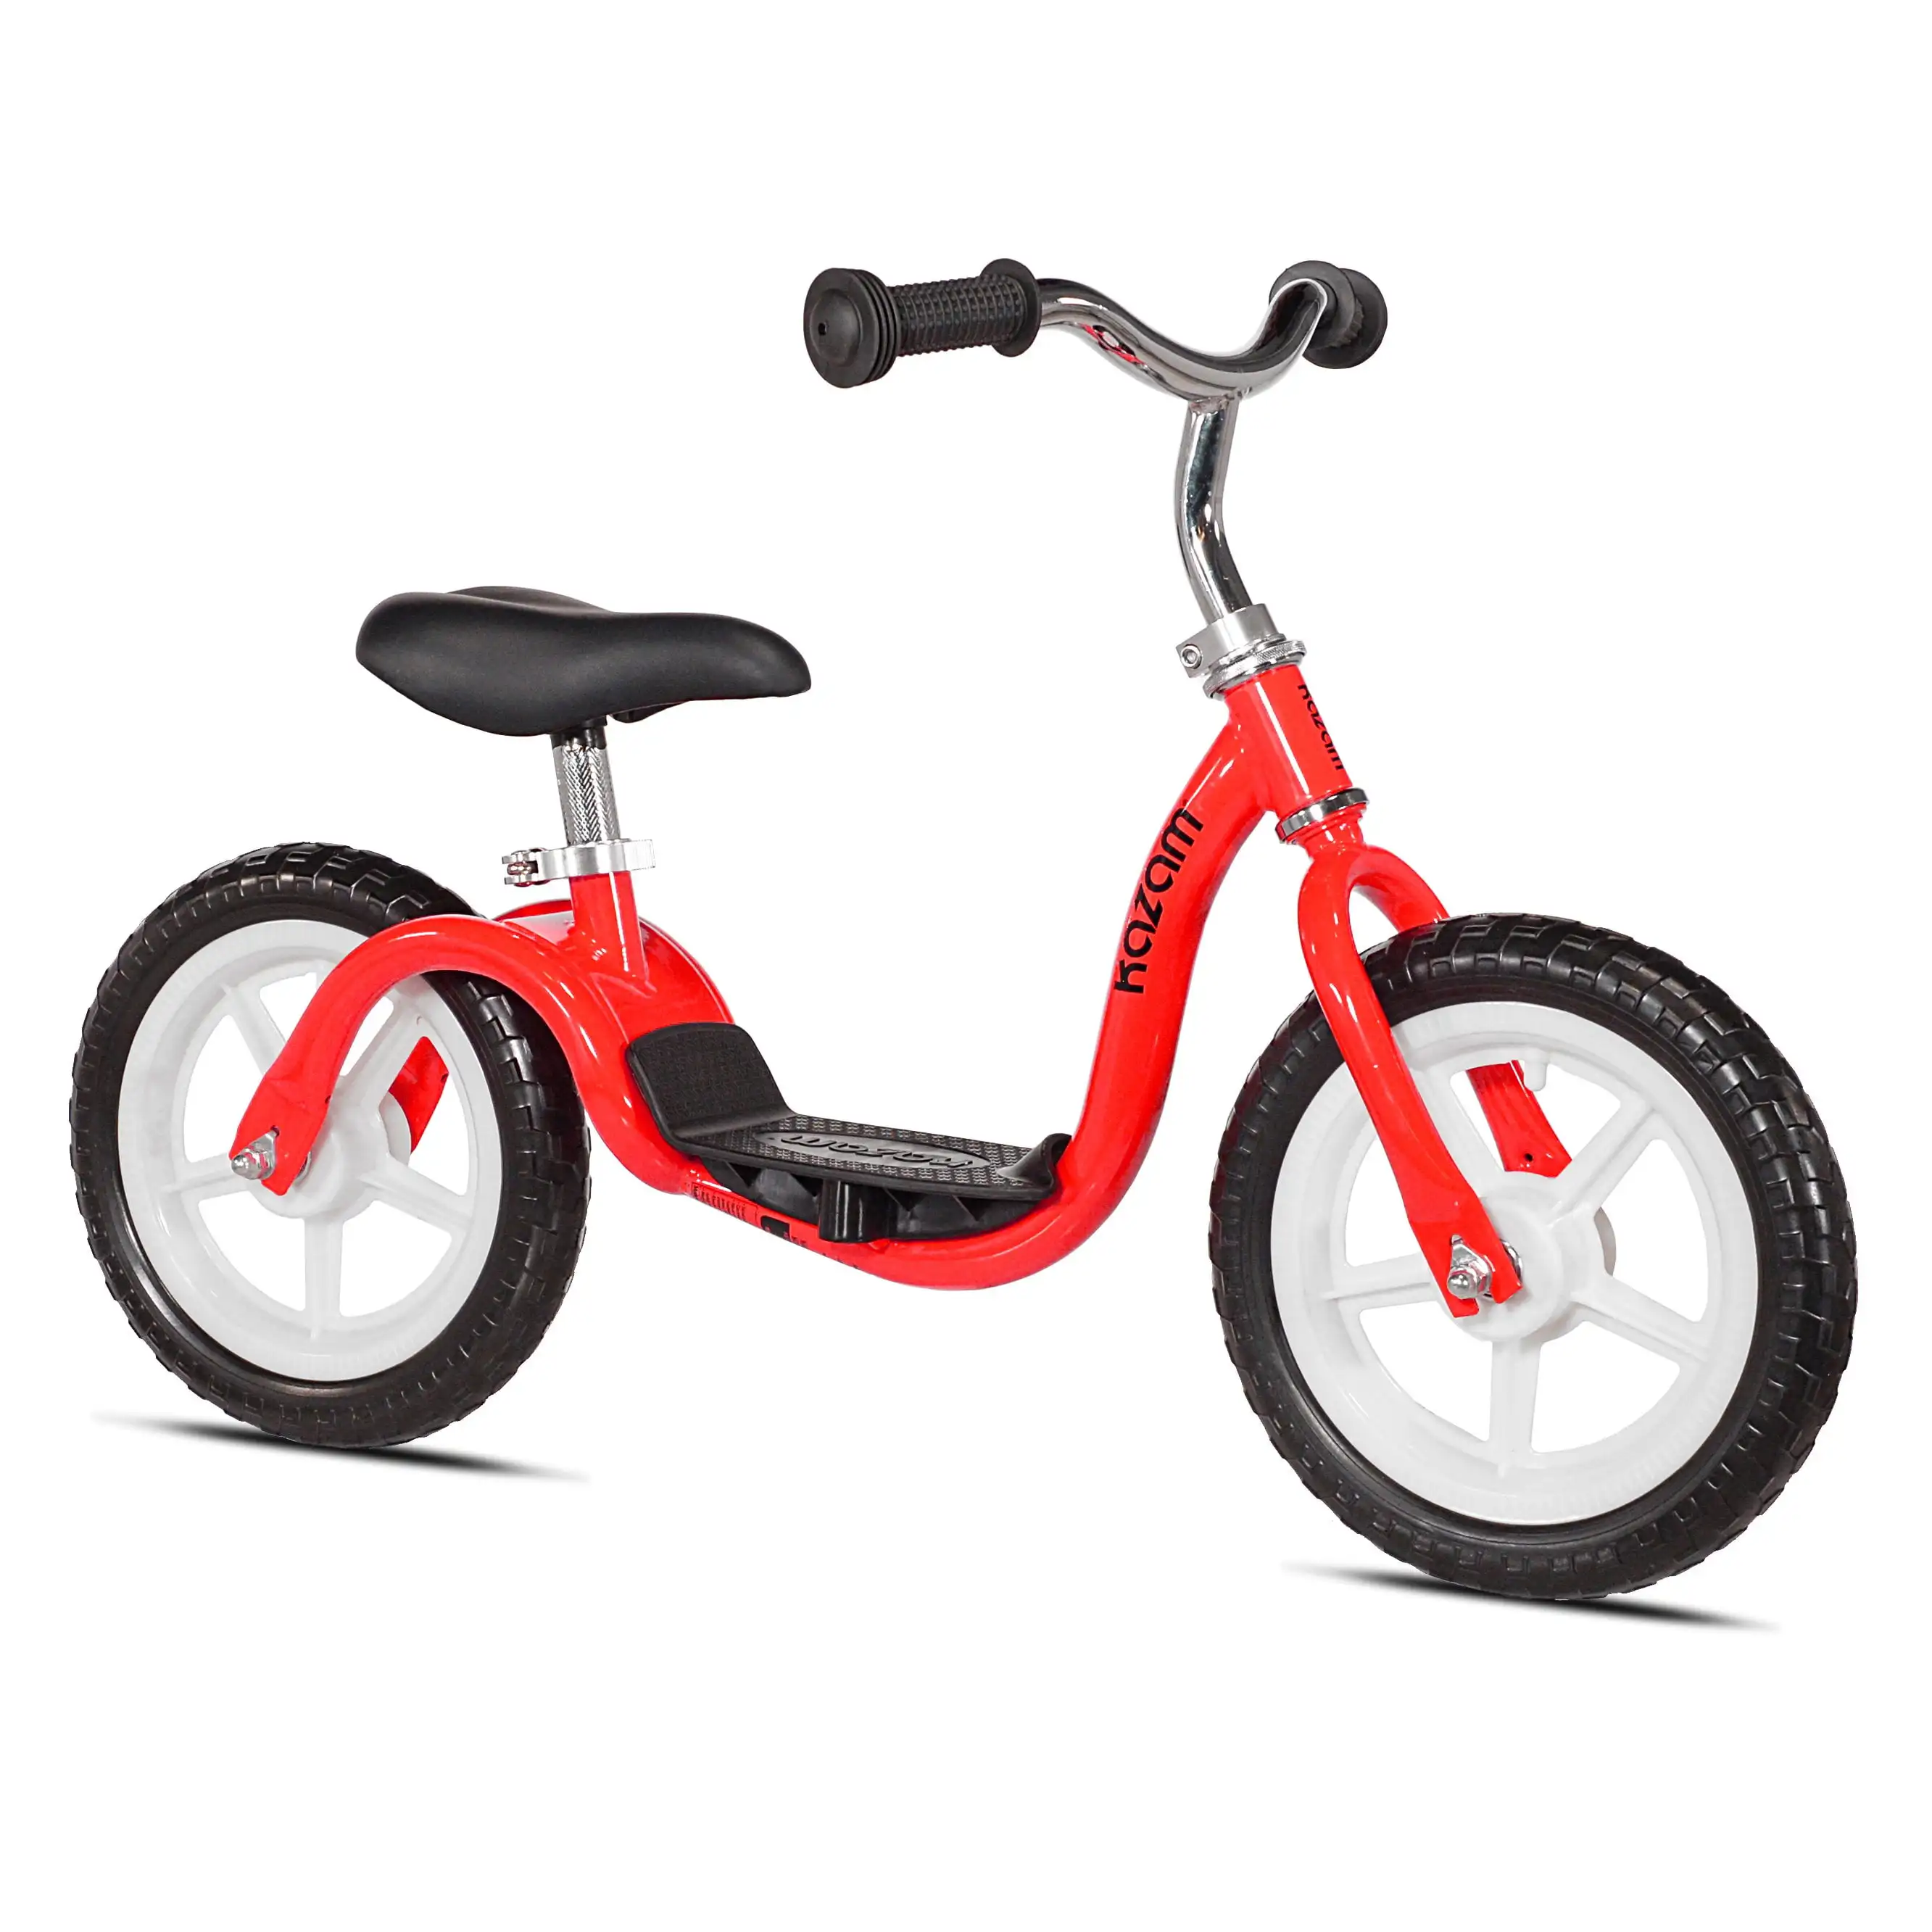 KaZAM Tyro Balance Child's Bike v2e - Red